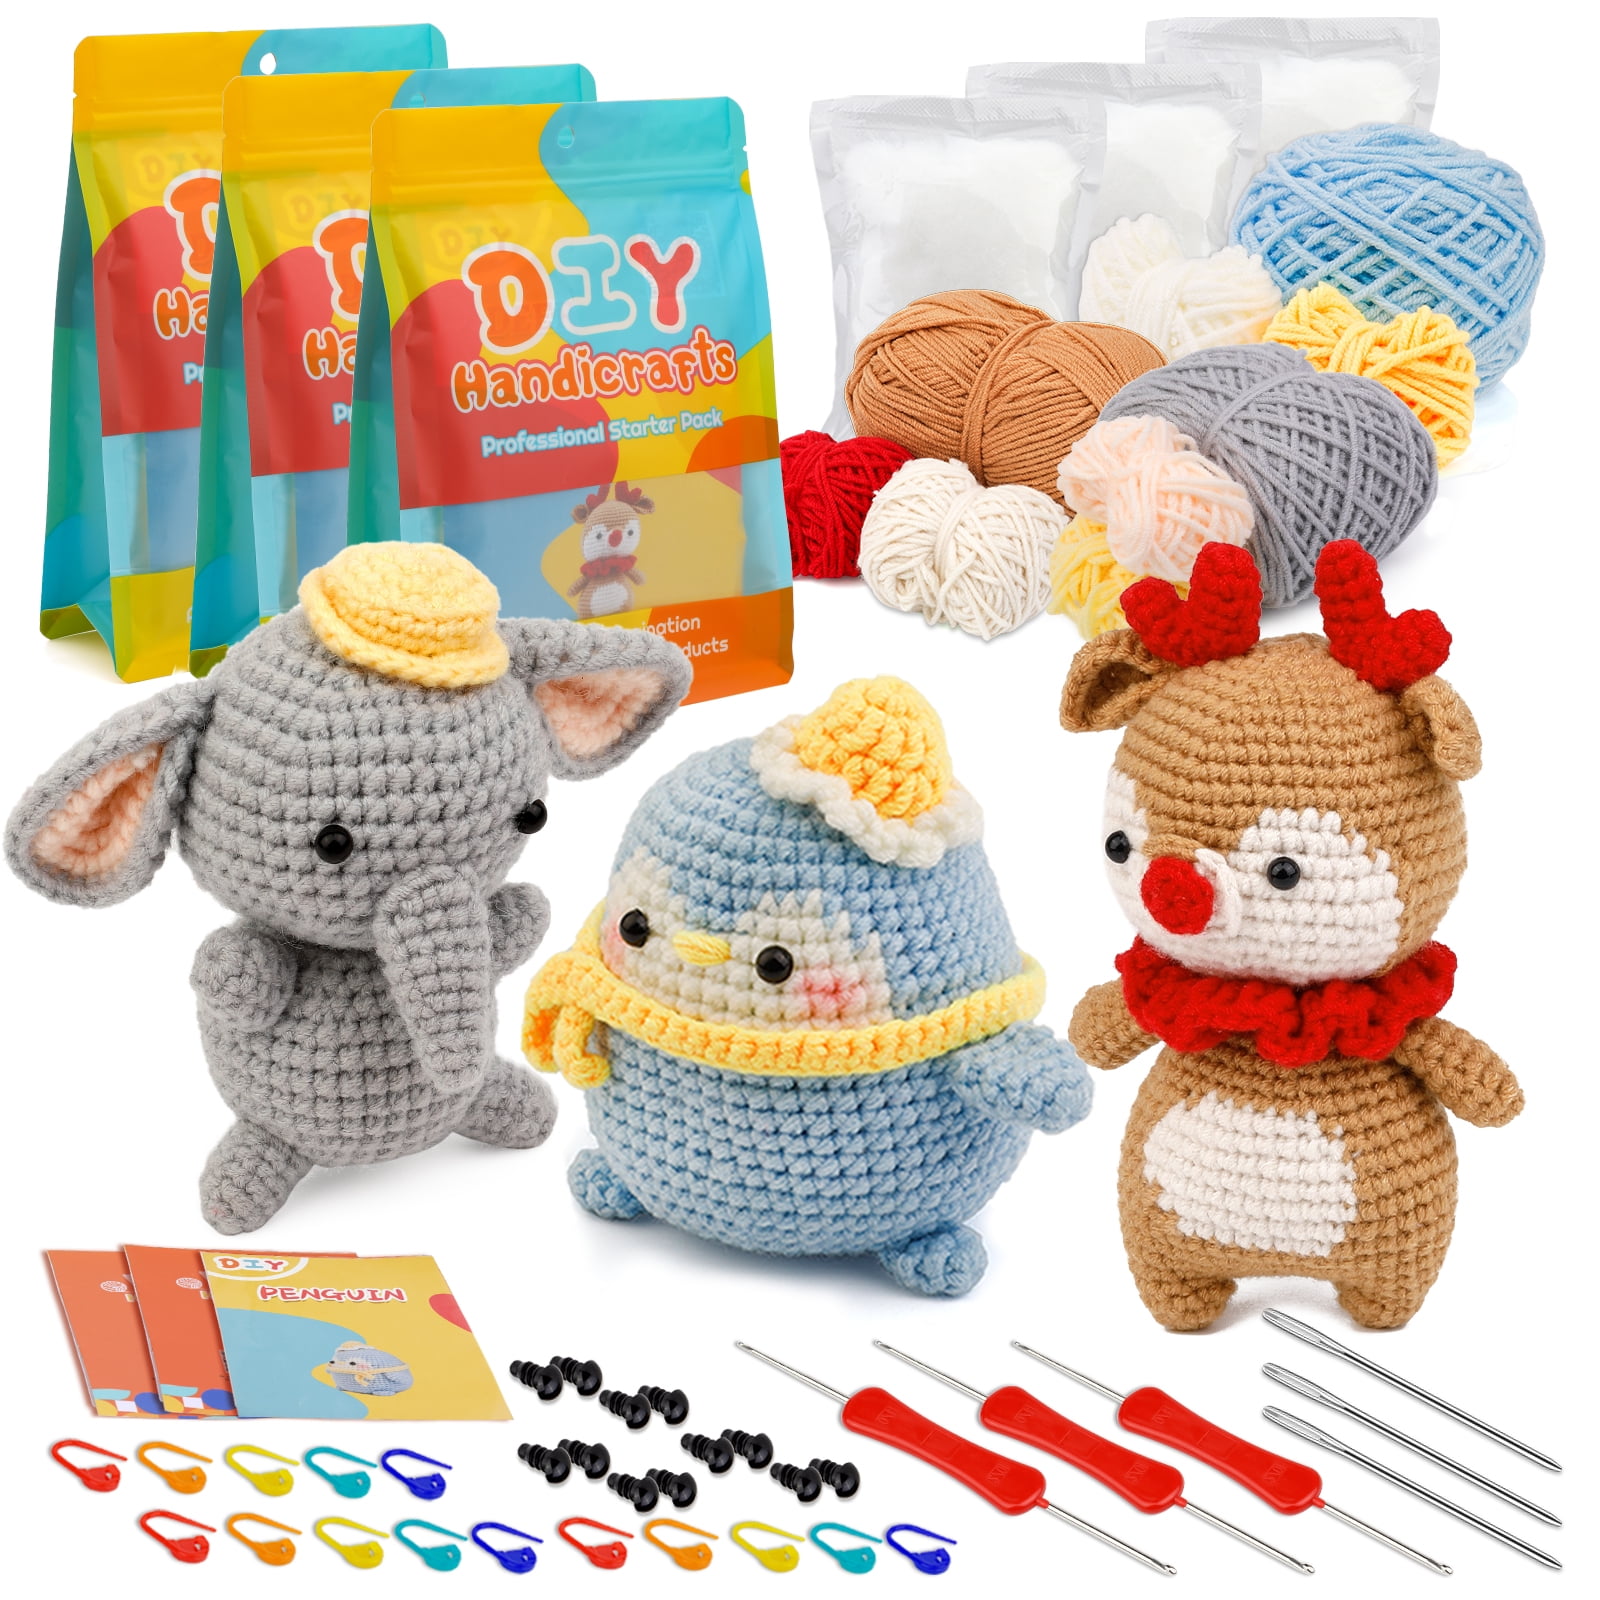  Crochet Kit for Beginners, Crochet Animal Kit, Crochet Starter  Kit with Yarn, Polyester Fiber, Crochet Hooks, Step-by-Step Instructions  Video, Knitting Kit for Beginner DIY Craft Art (Hedgehog) : Everything Else